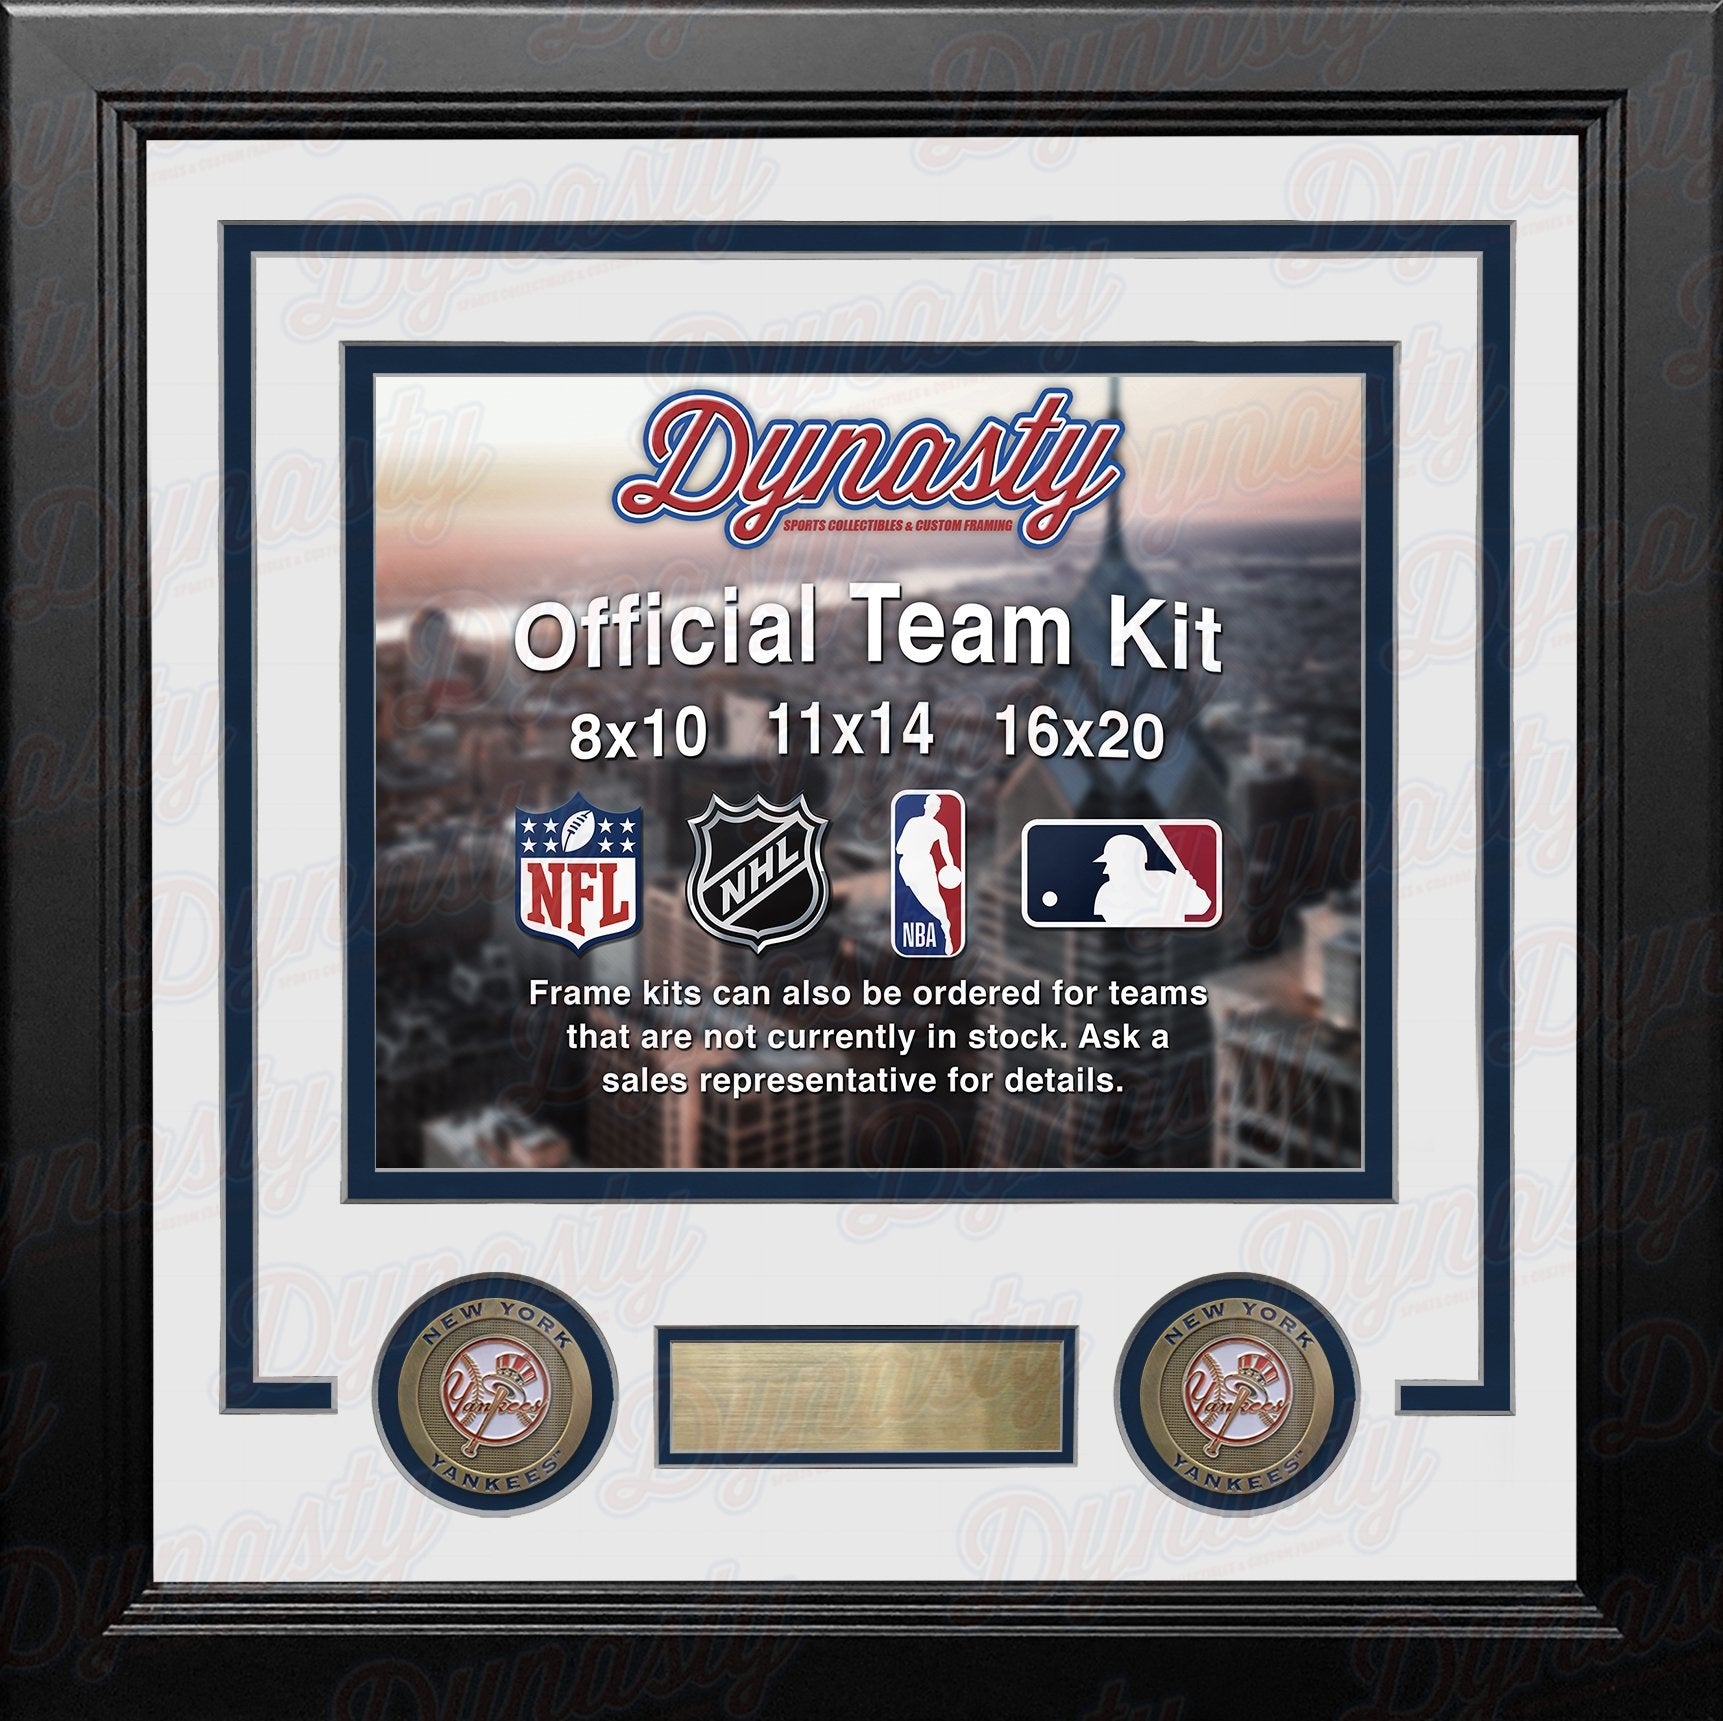 New York Yankees Custom MLB Baseball 11x14 Picture Frame Kit (Multiple Colors) - Dynasty Sports & Framing 